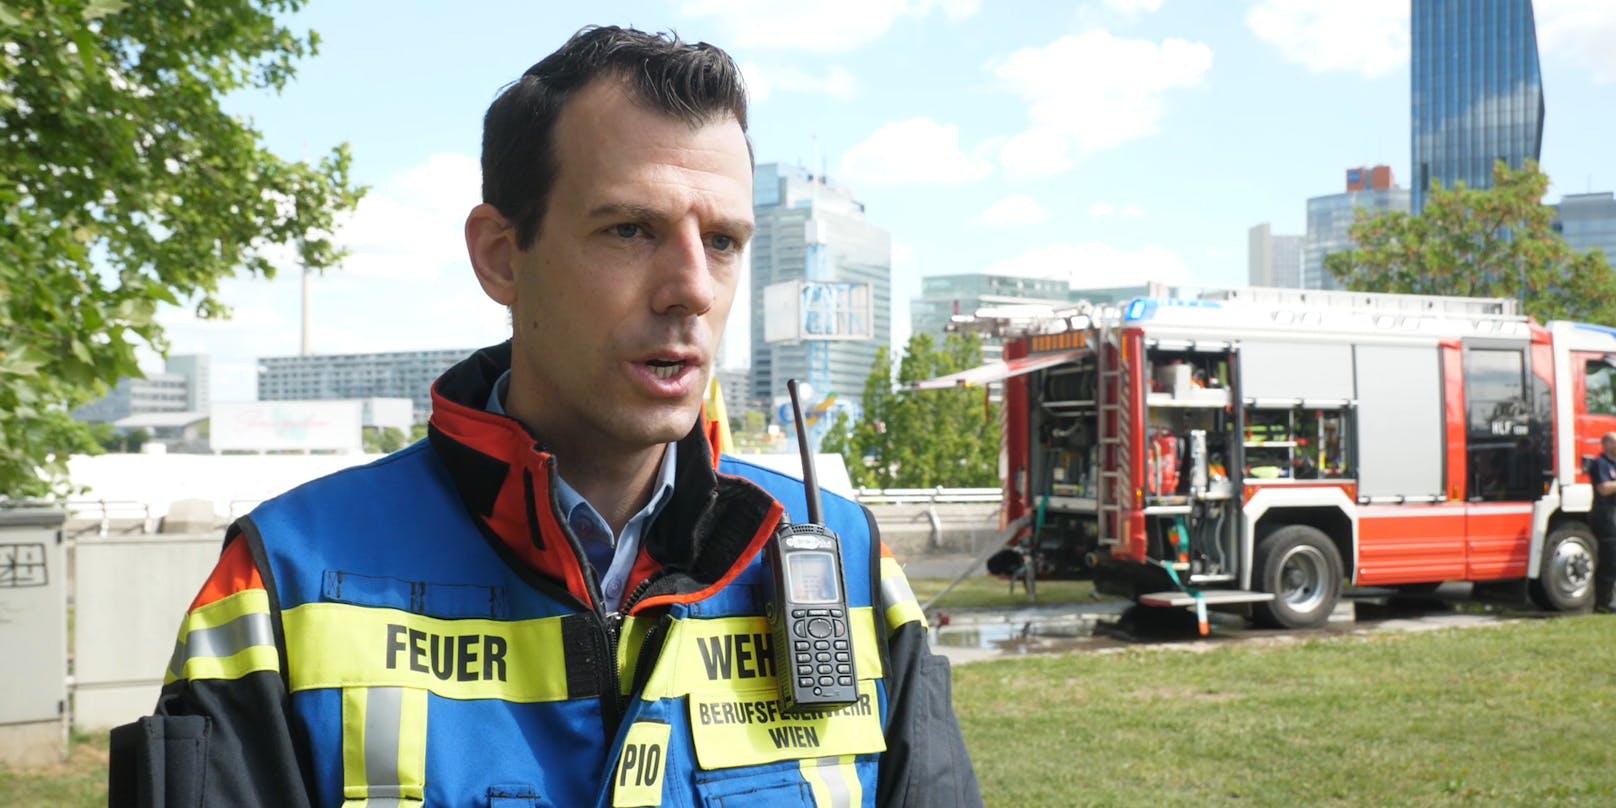 Feuerwehr-Sprecher Gerald Schimpf sprach mit "Heute" über den dramatischen Einsatz auf der Donauinsel.